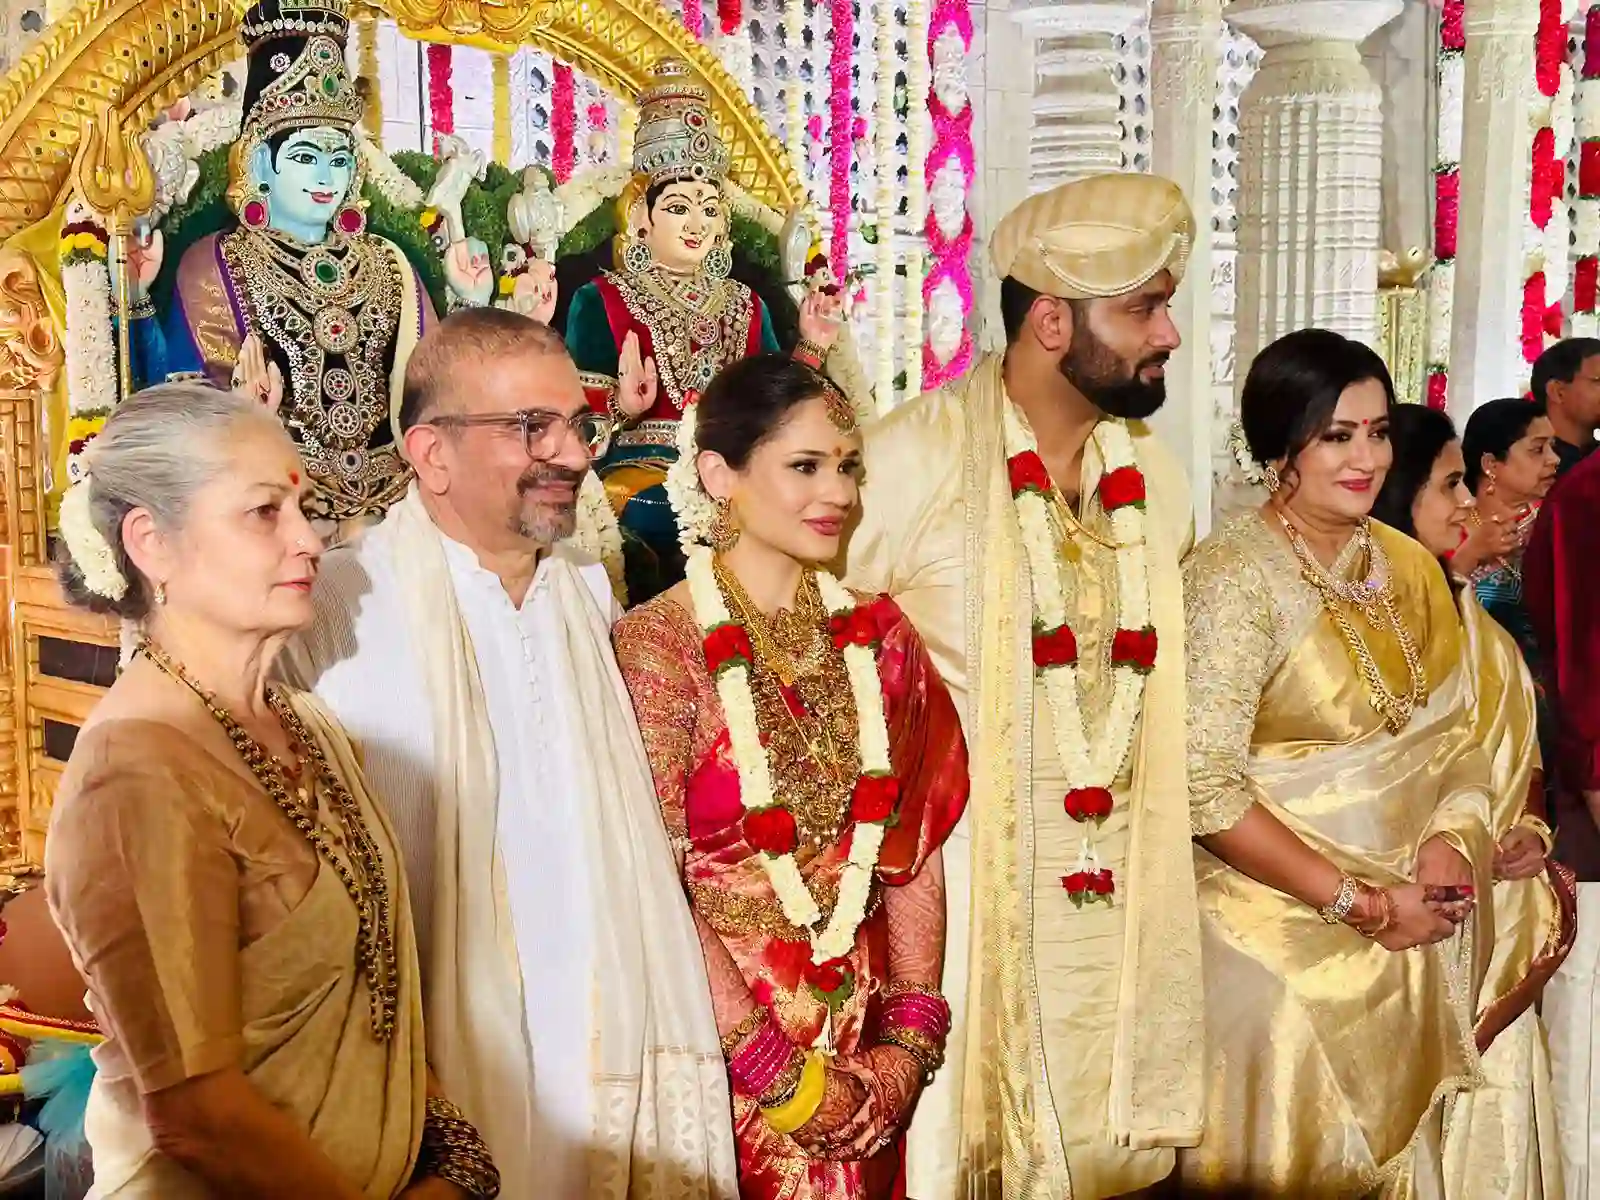 Rajinikanth and Yash photos at Sumalatha Ambareesh son wedding